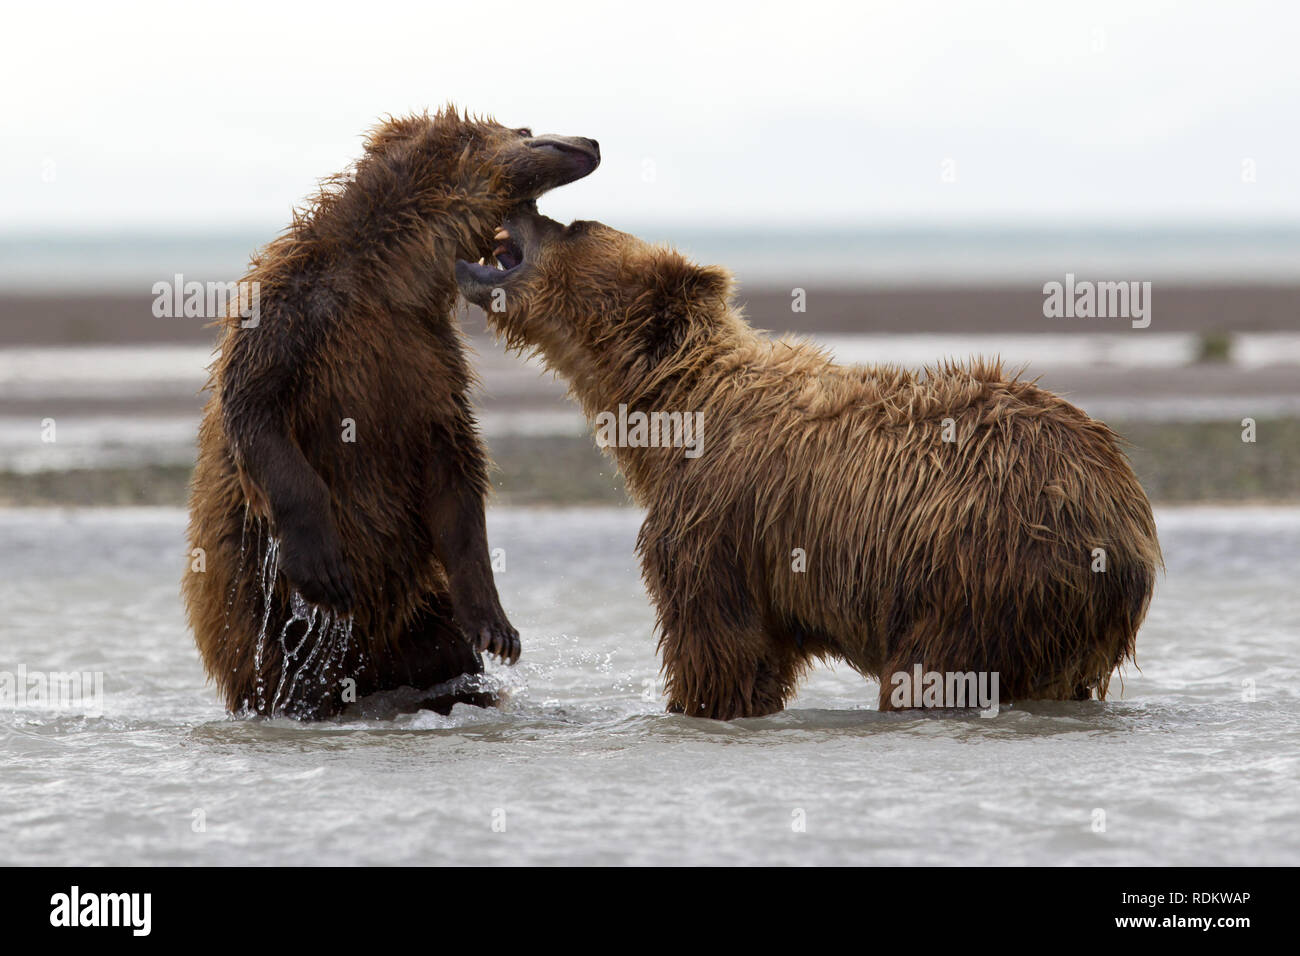 Orso bruno Ursus arctos, visualizzazione è una delle attività più popolari a Hallo Bay, Katmai National Park, Alaska, come grizzlies congregano sulla spiaggia a pescare. Foto Stock